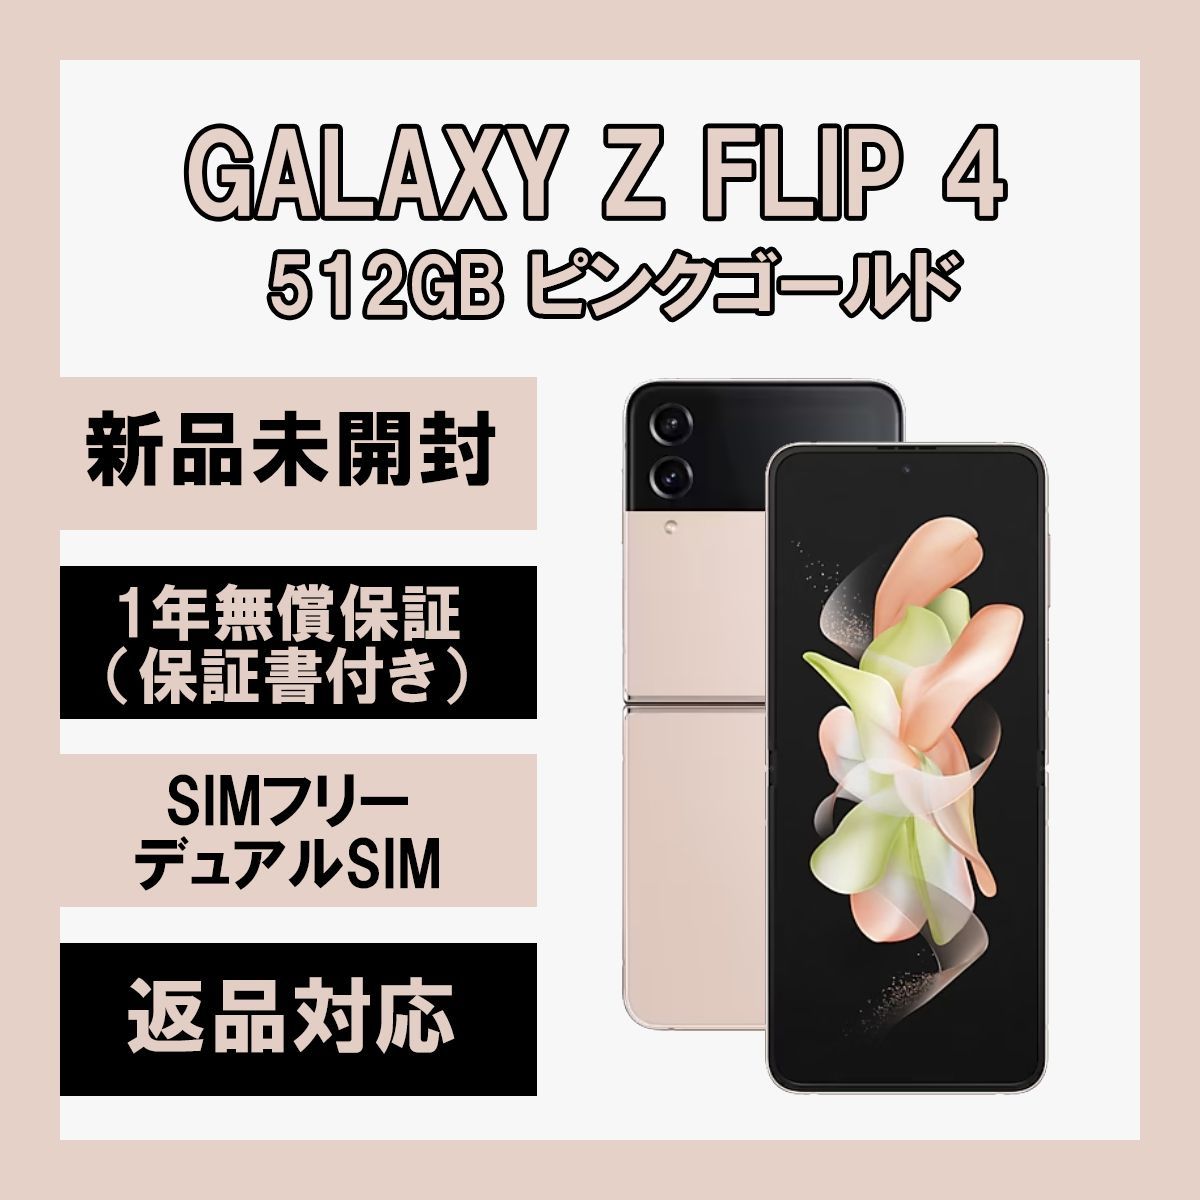 おまけ】Galaxy Z Flip4 ケース3つ付き - スマートフォン本体